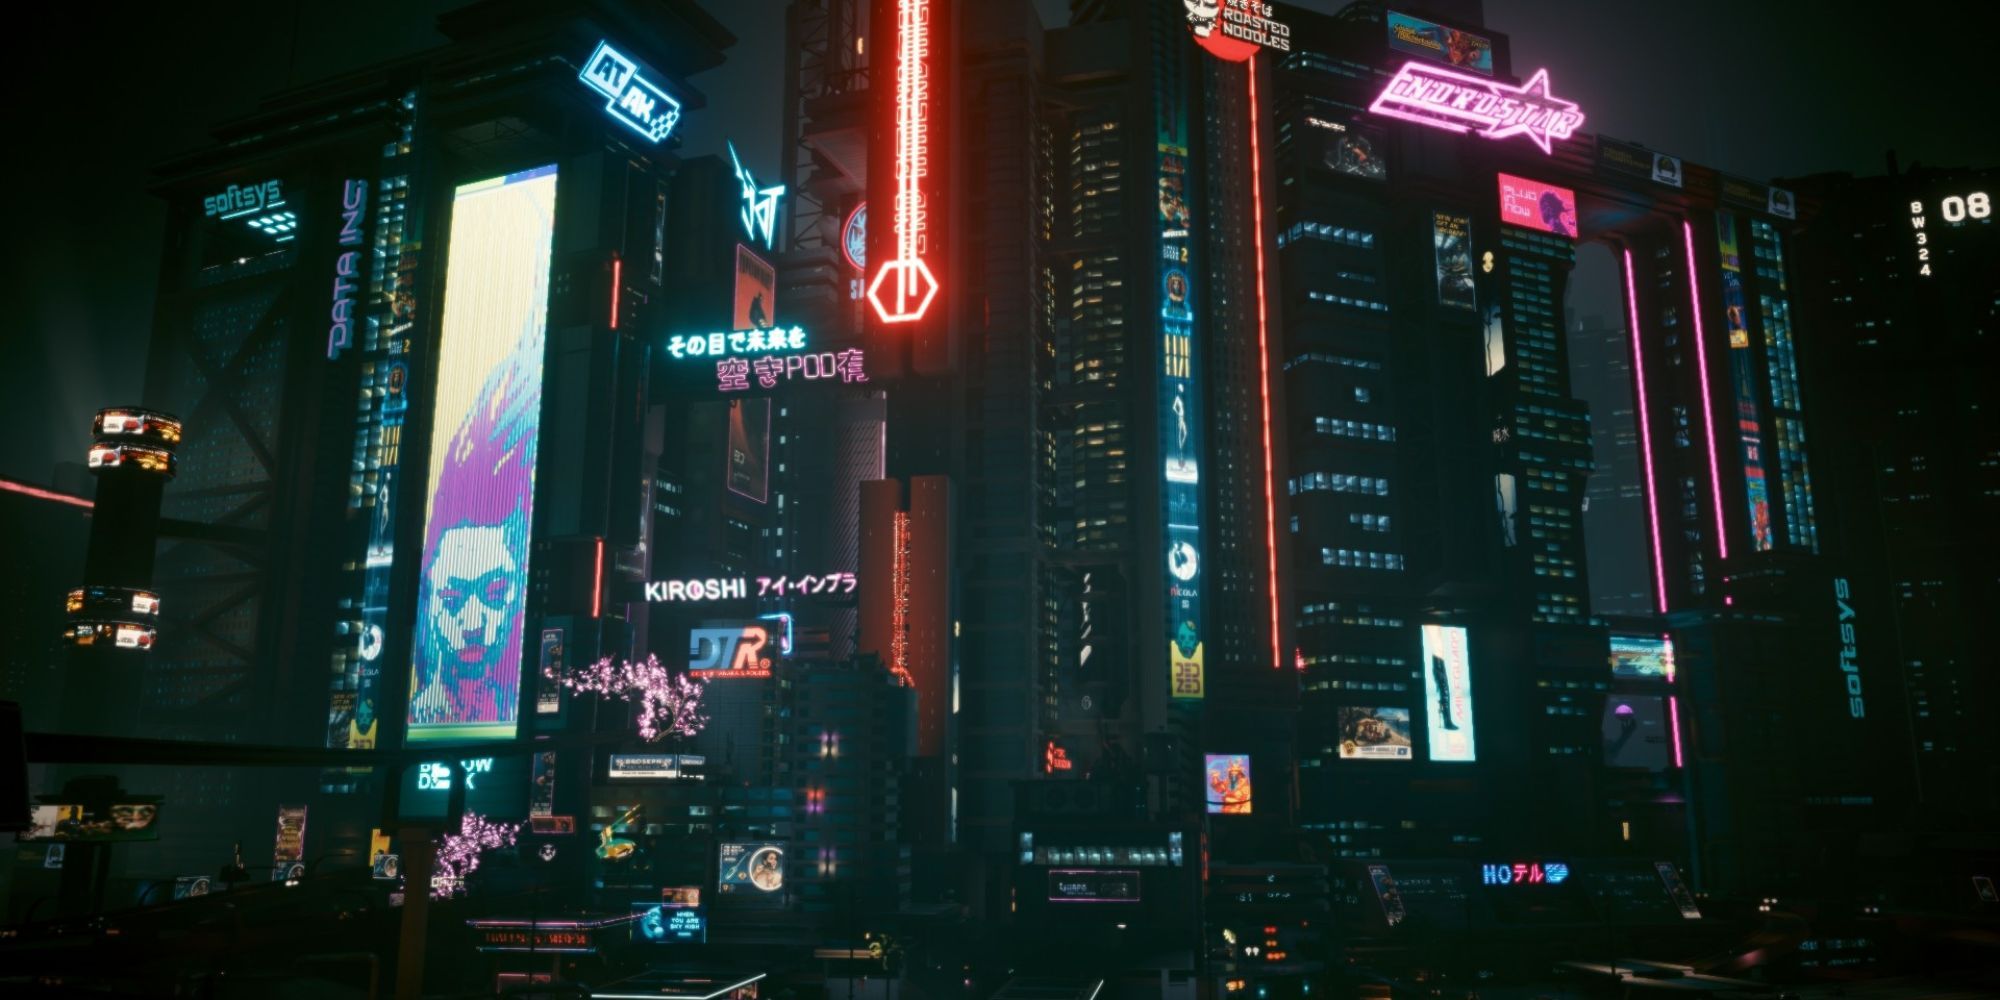 Скриншот Ночного города, на котором показаны высокие здания, яркий свет и реклама.